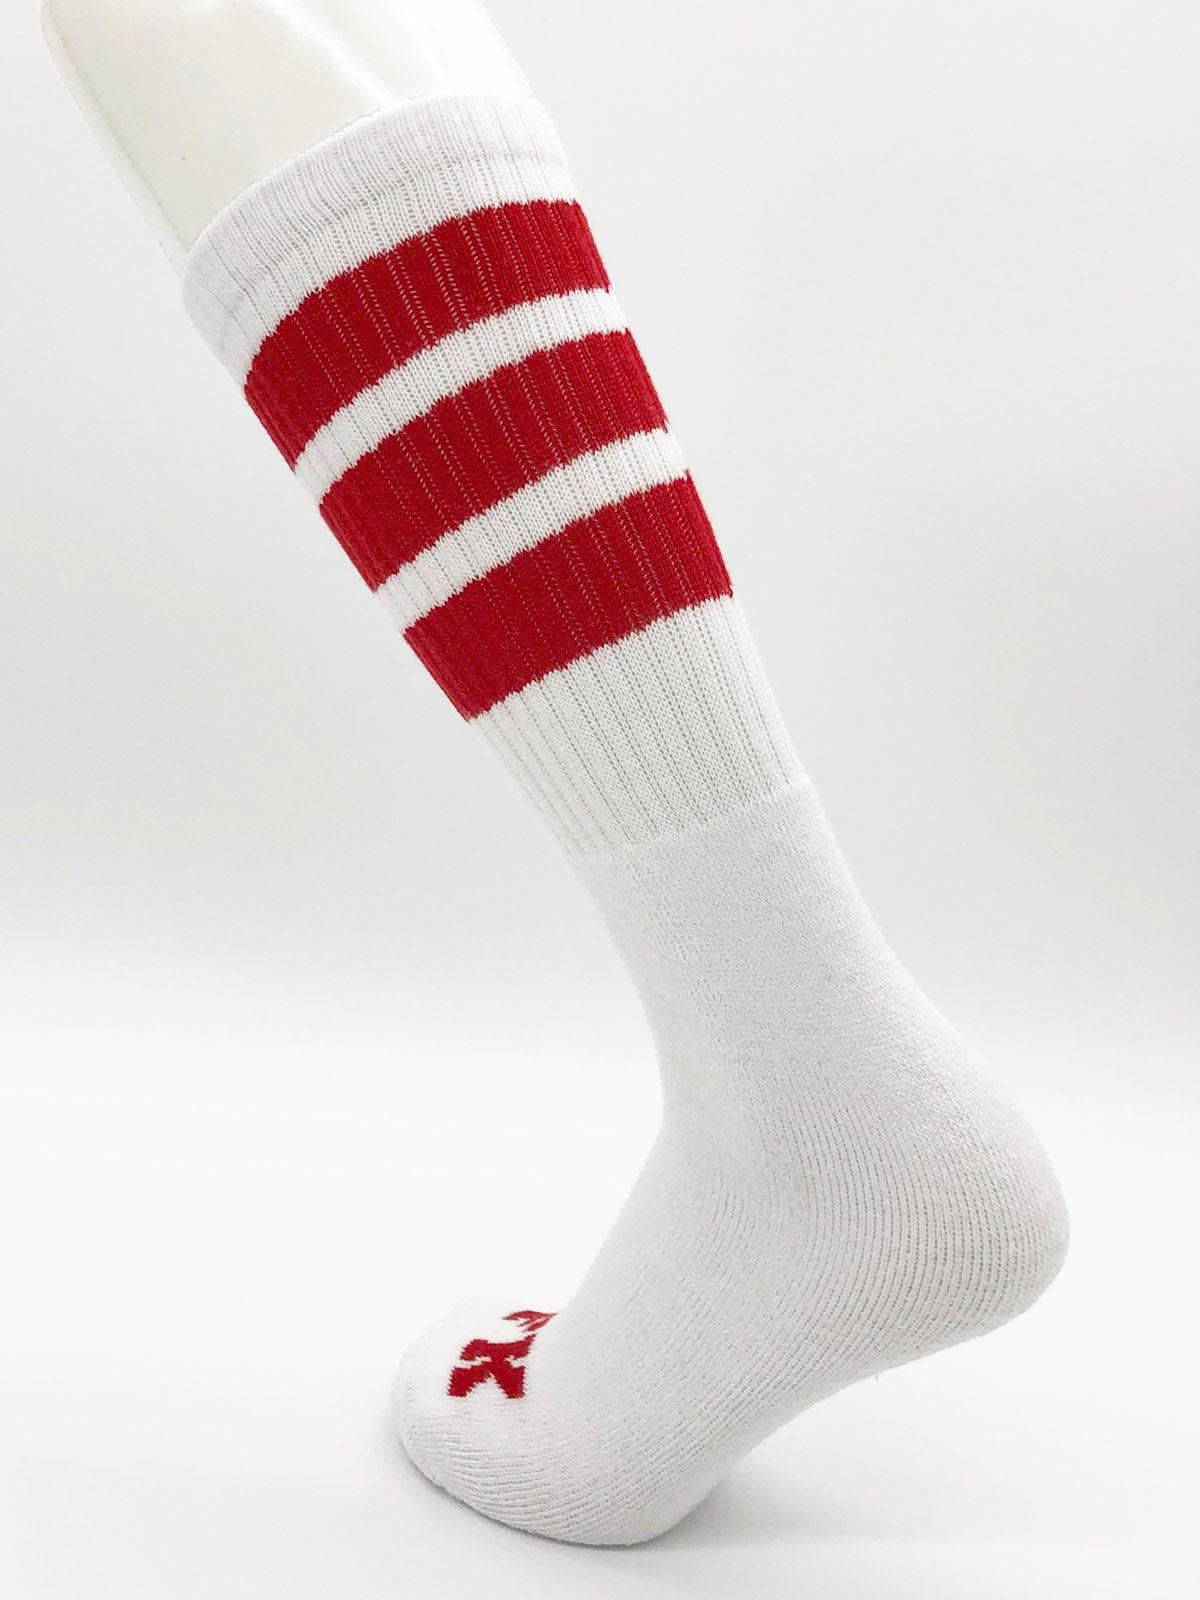 F*ck Off Ankle Tube Socks: Red, Blue, White